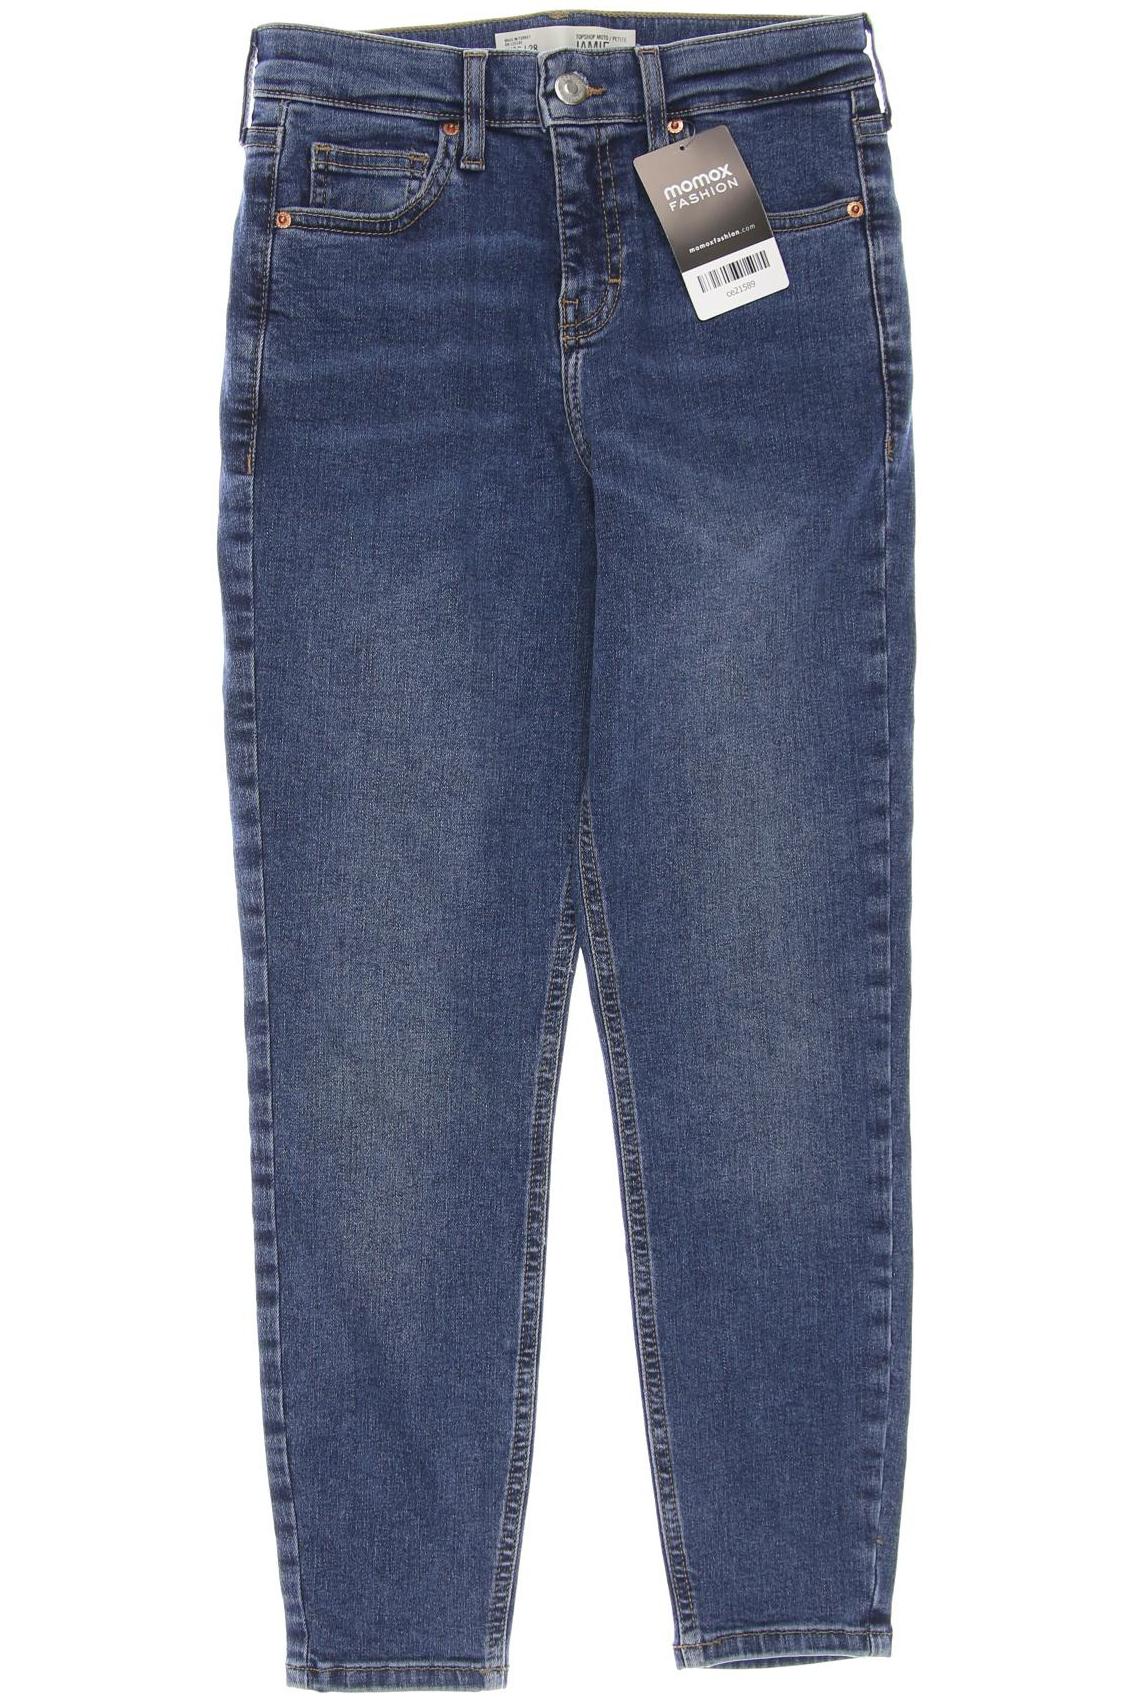 Topshop Damen Jeans, blau, Gr. 36 von Topshop